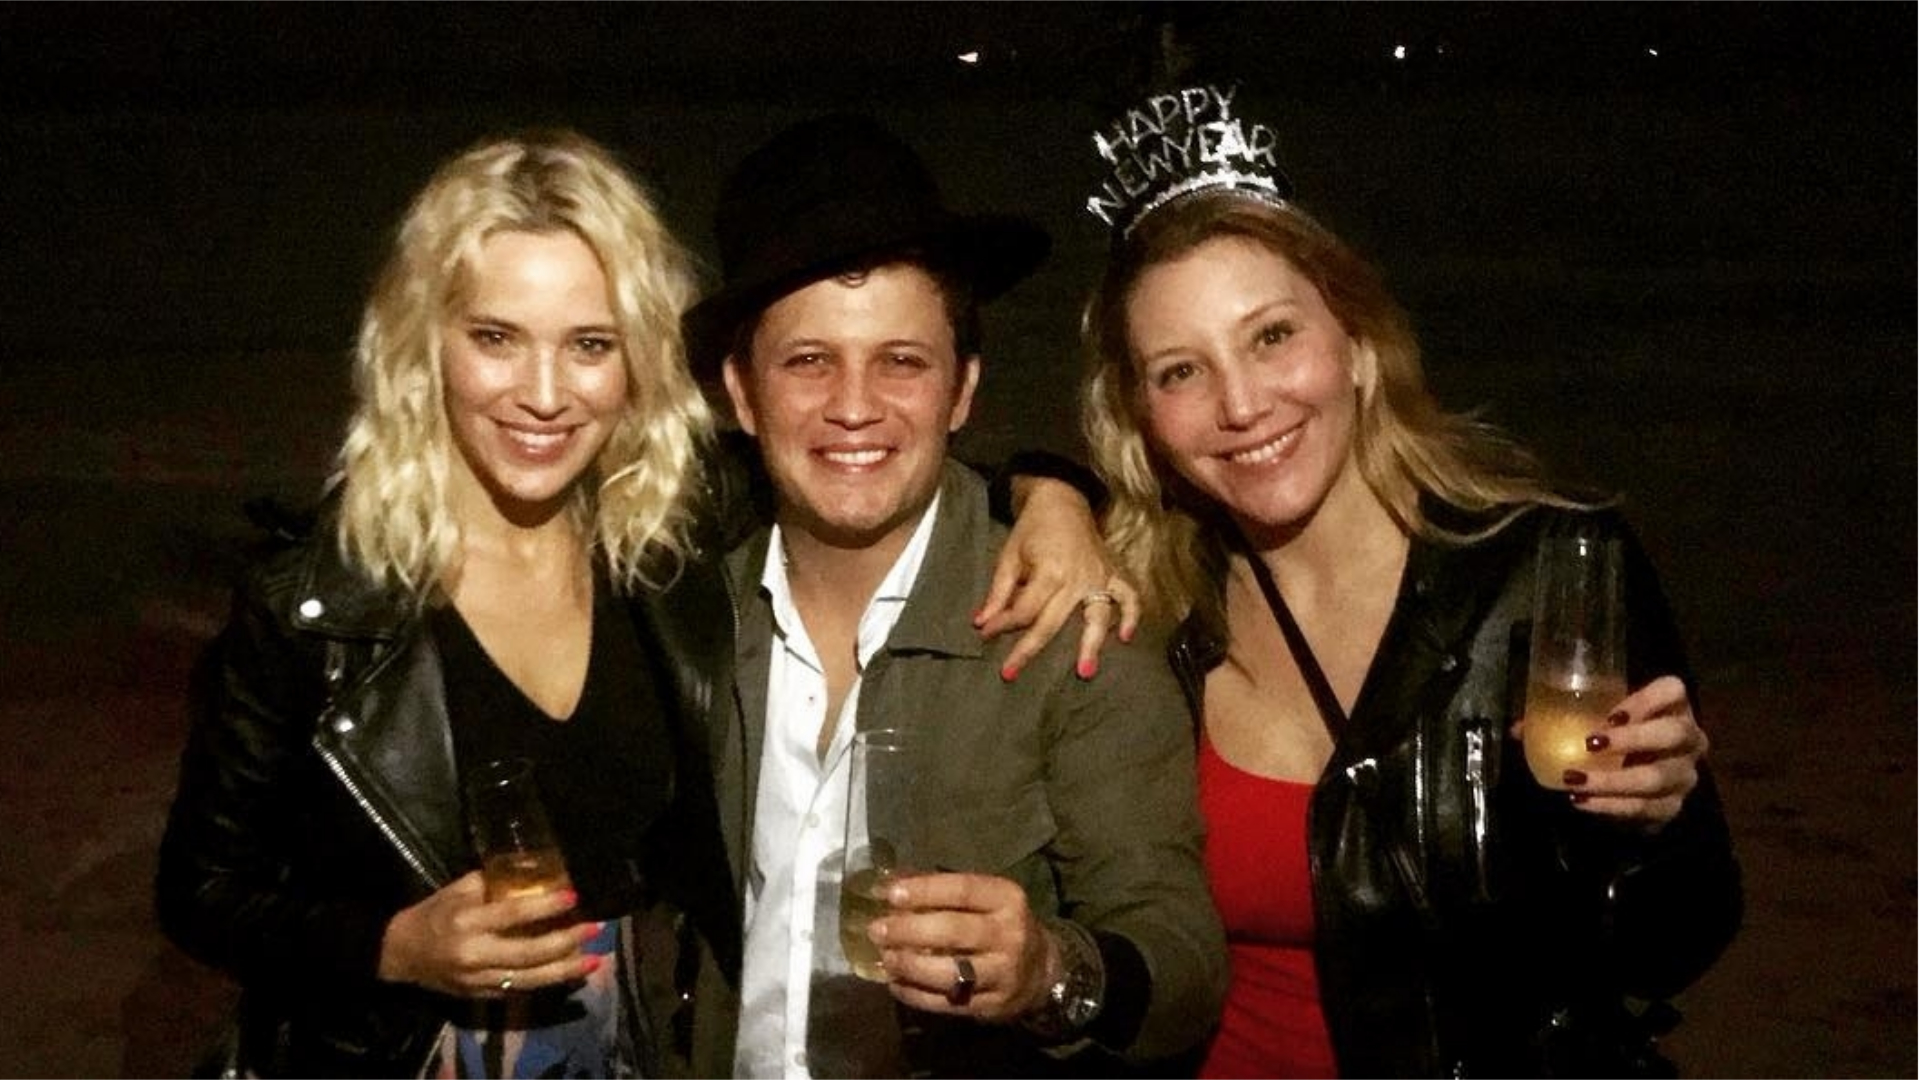 Los hermanos sean unidos: Luisana, Darío y Daniela en una fiesta de Año Nuevo (Foto: Instagram)